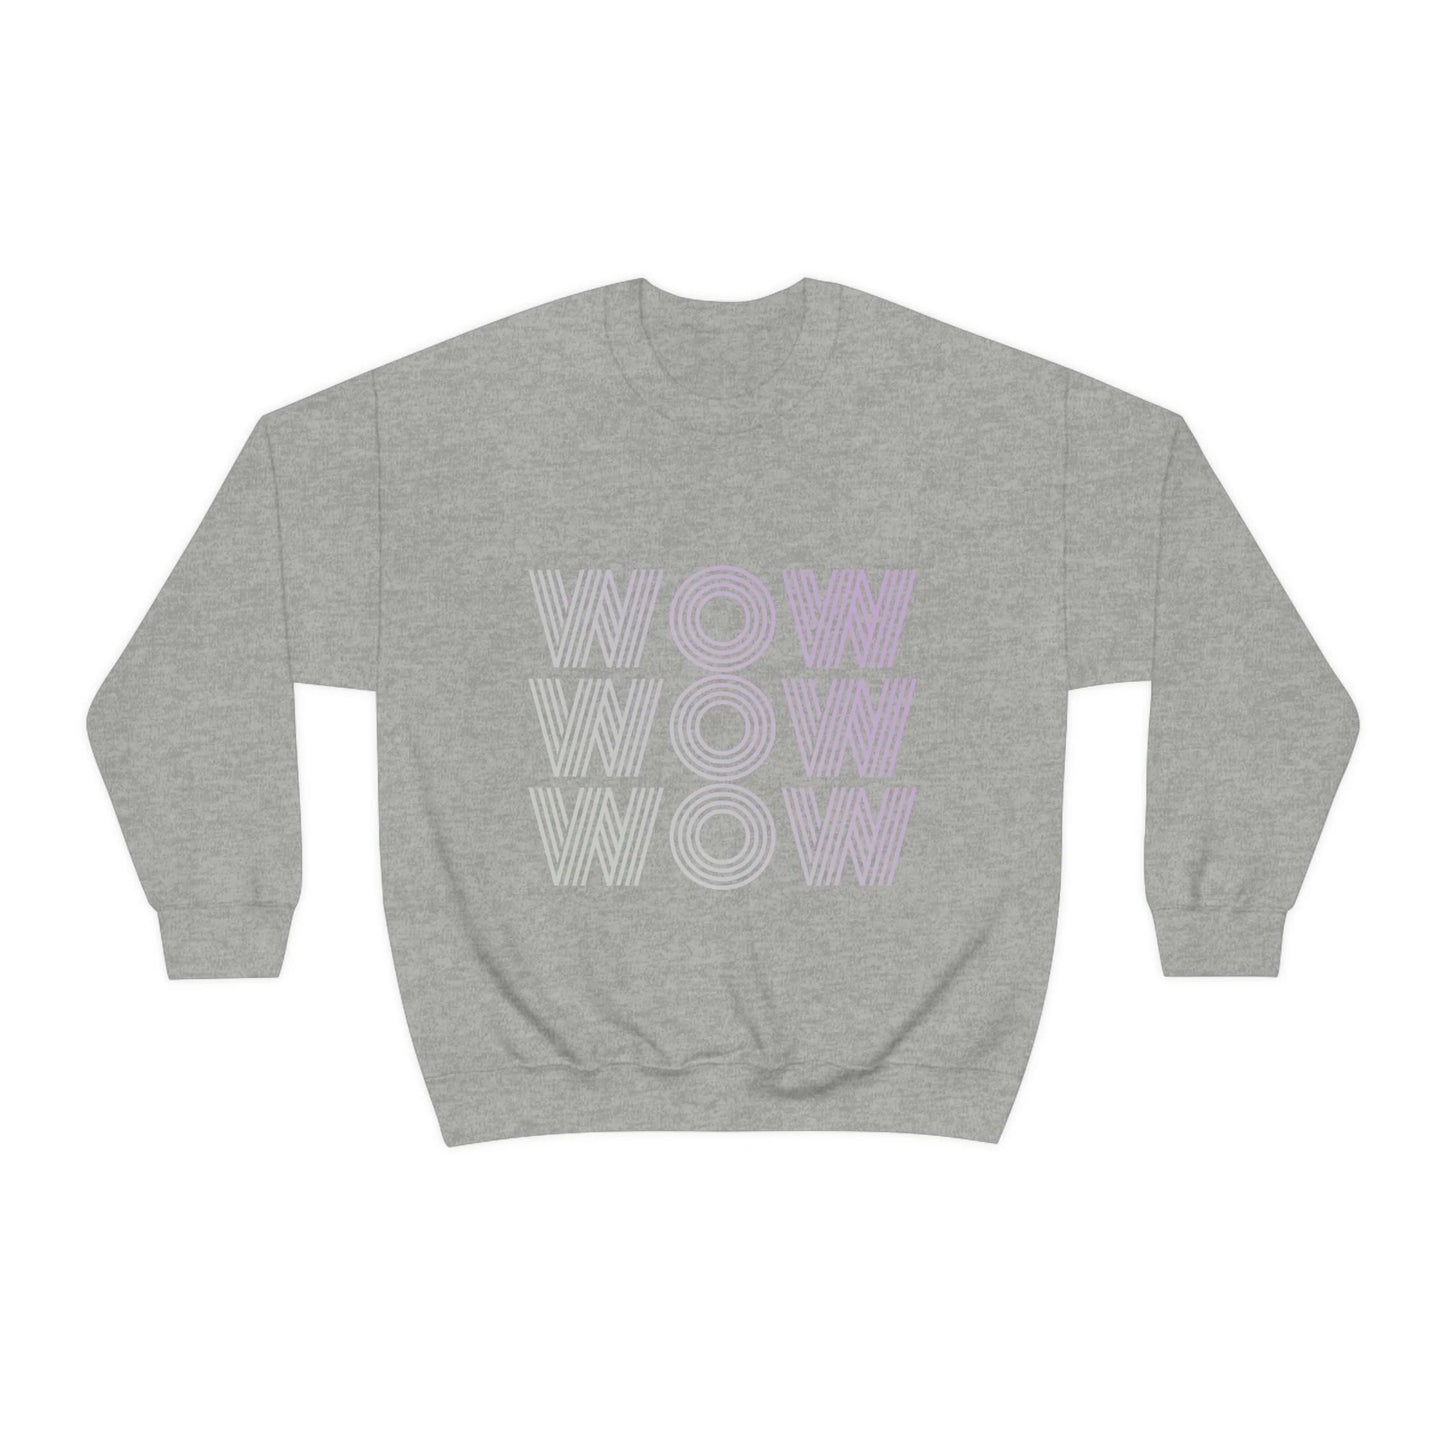 Womens Wow Graphic Sweatshirt